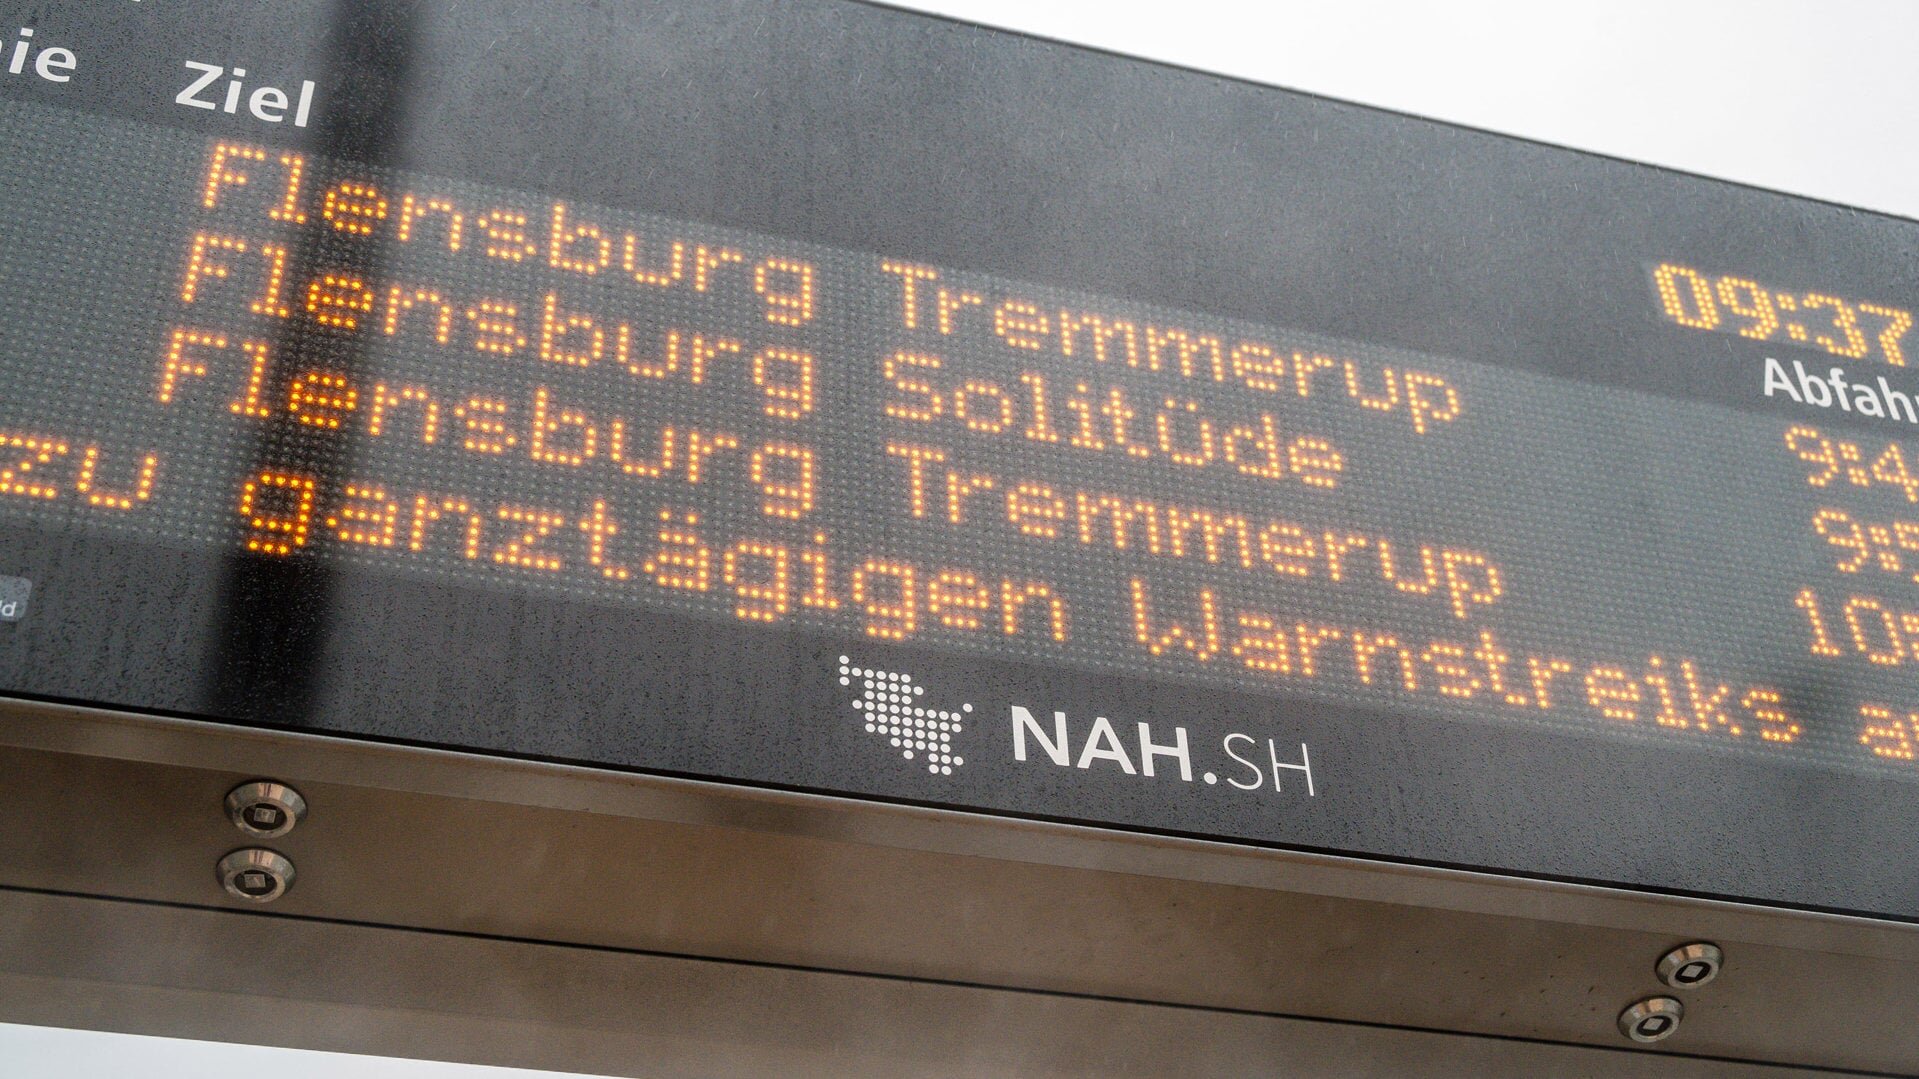 Passagererne i Flensborg risikerer ikke længere at blive mødt af dette budskab. Foto:  